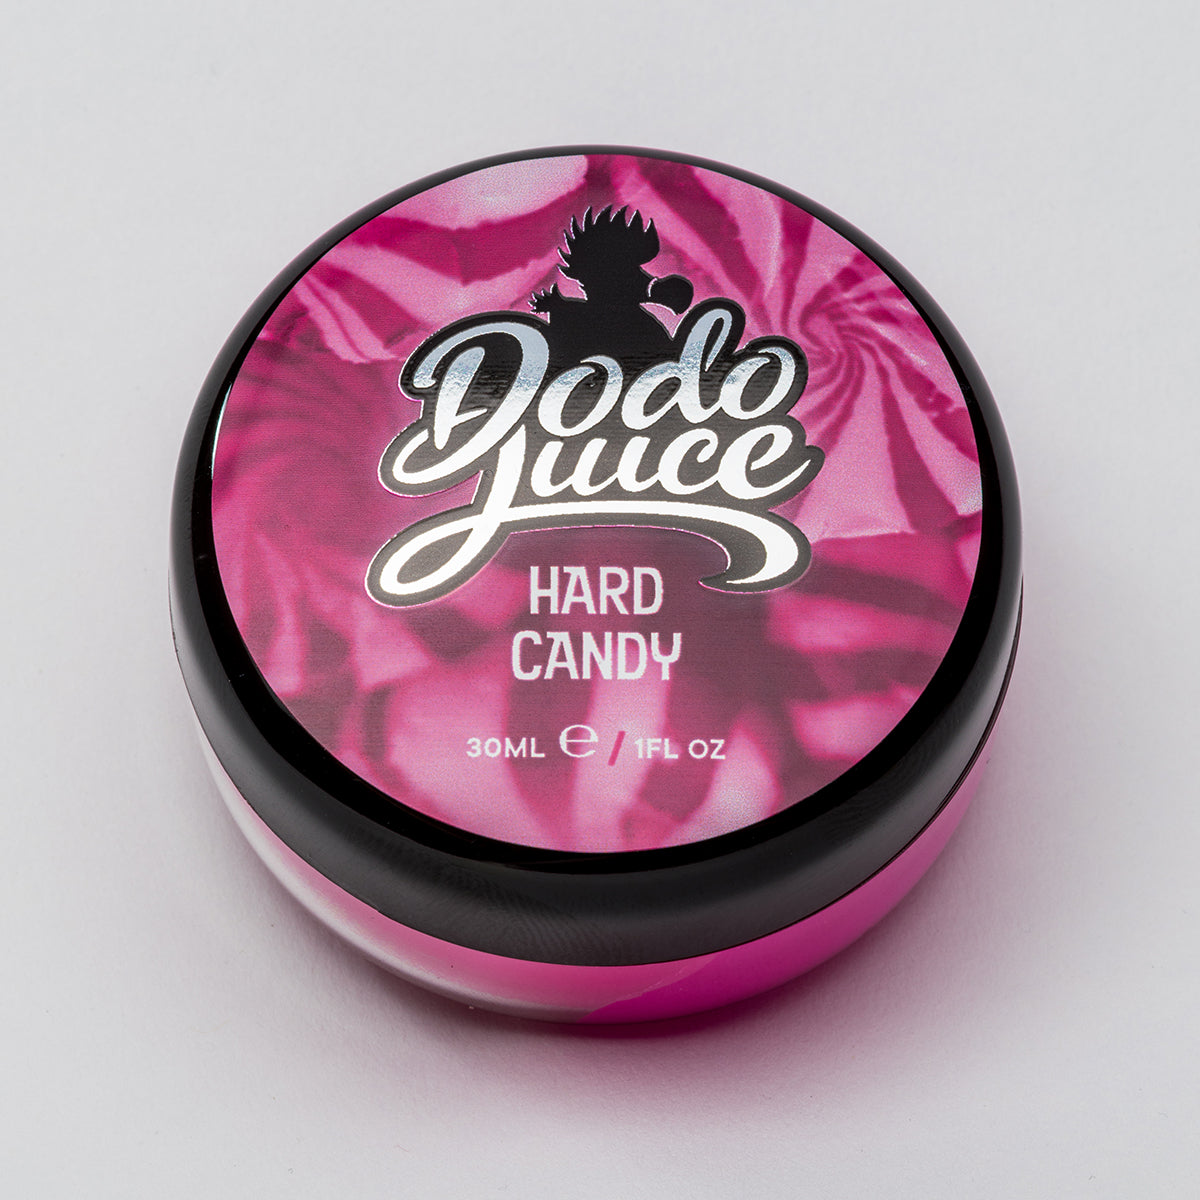 Hard Candy 30ml - our original carnauba hard wax - for any colour car HS 3404900000